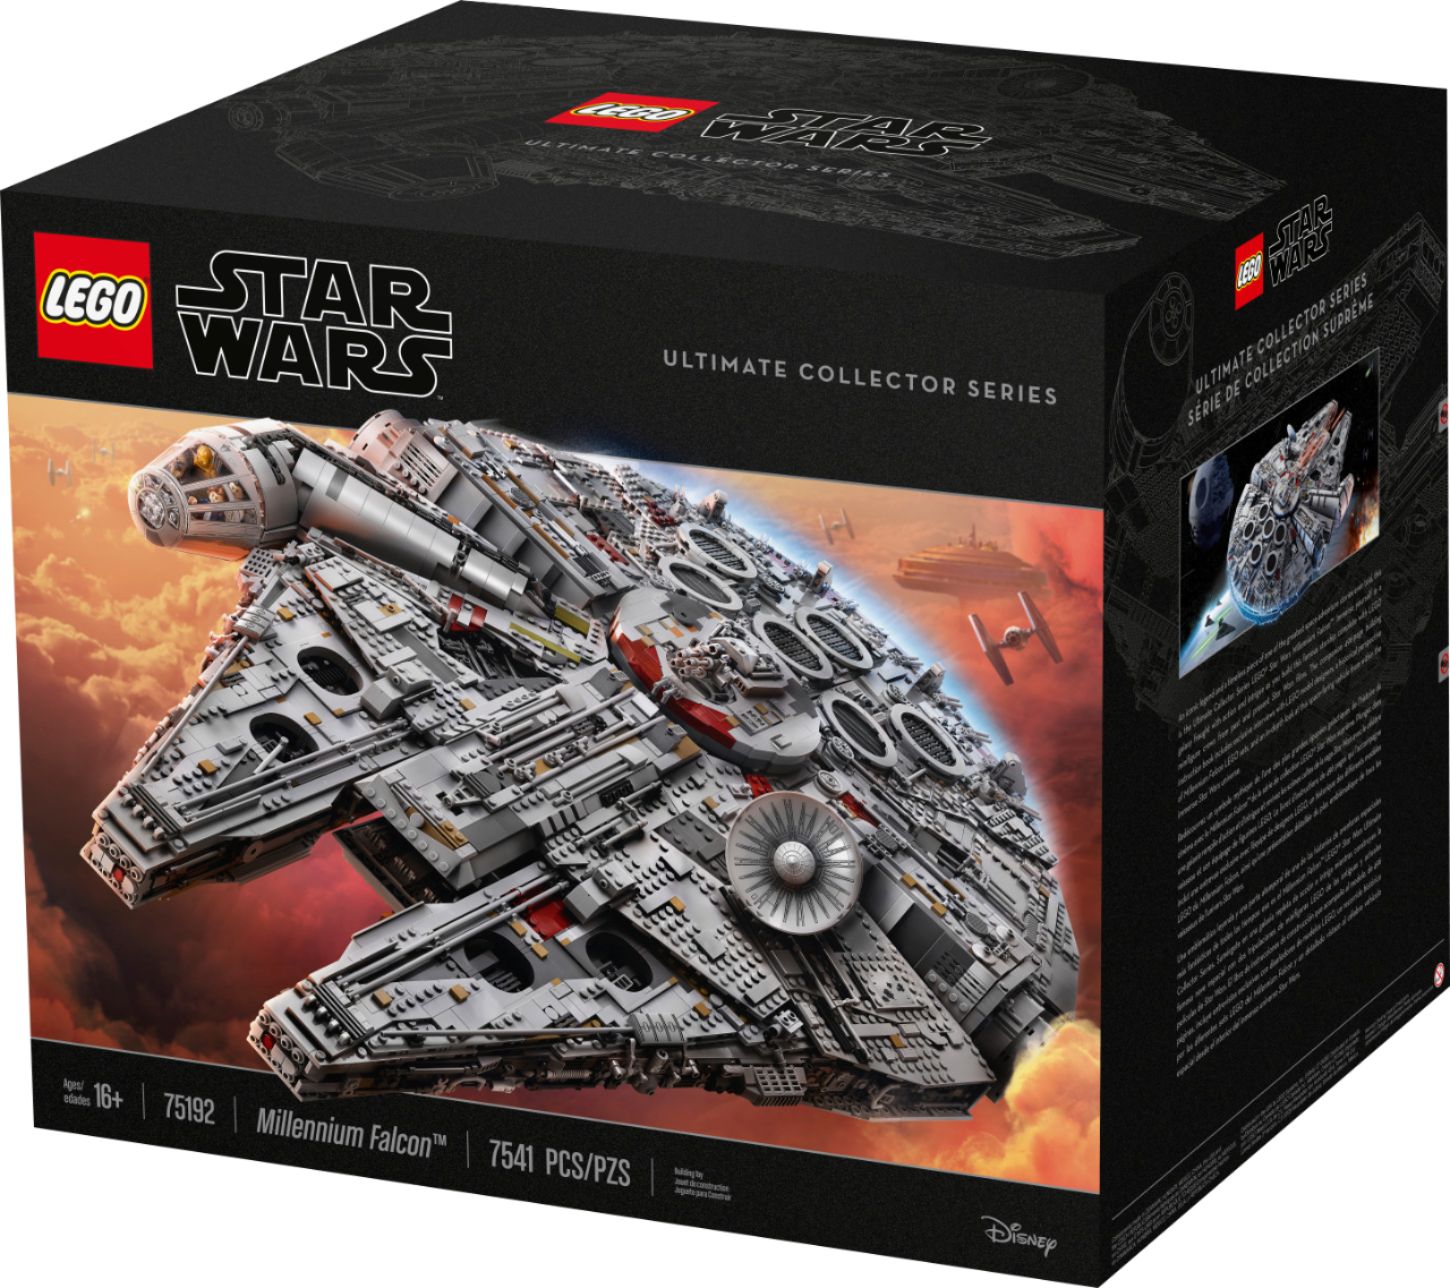 LEGO Star Wars TM Millennium Falcon 75192 6175771 - Buy